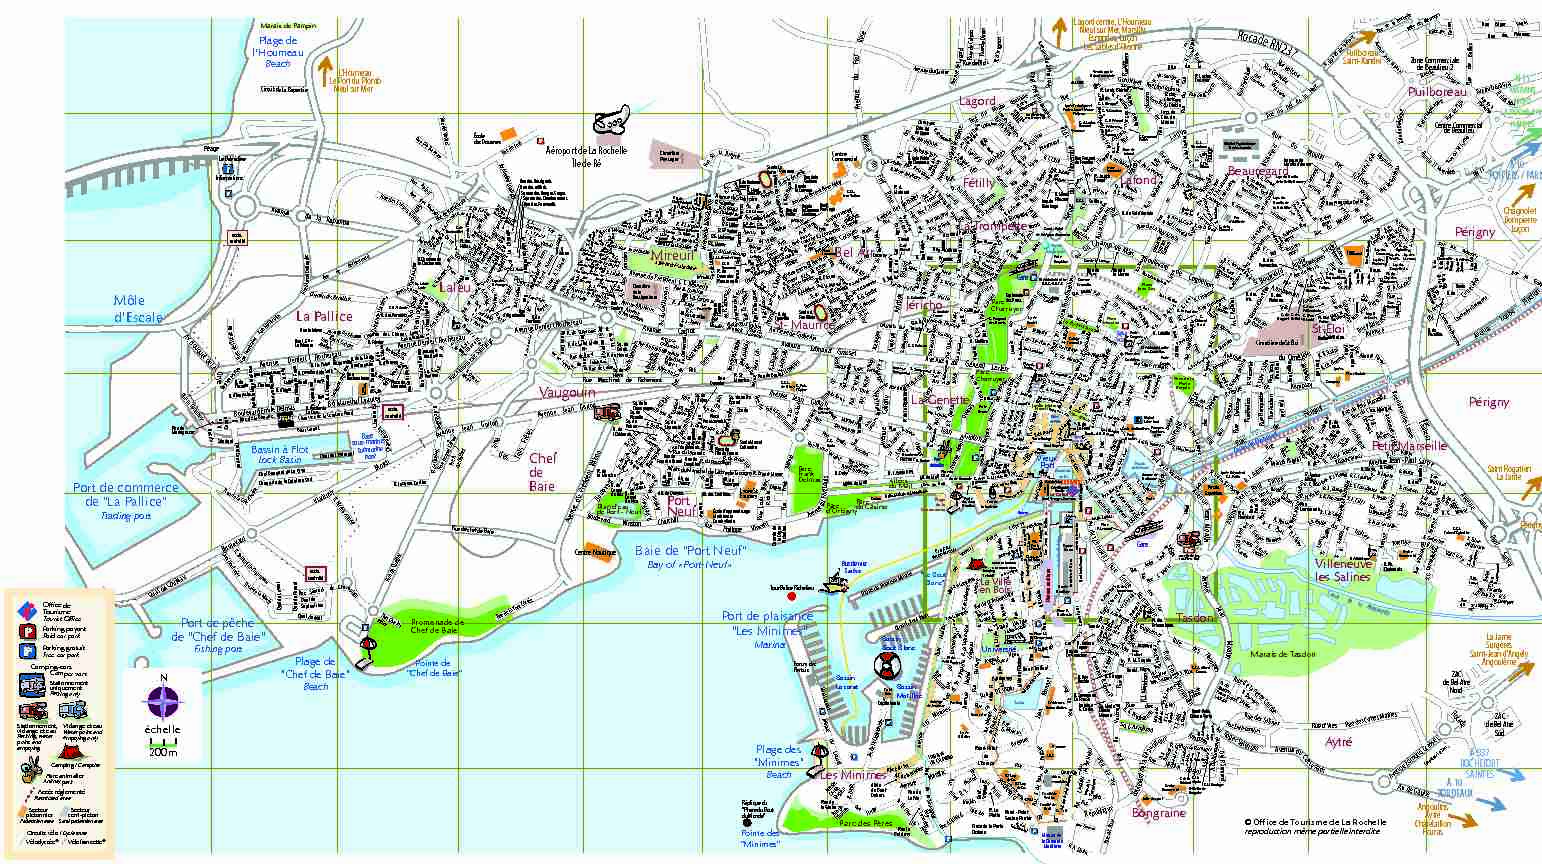 Le plan touristique de la Rochelle